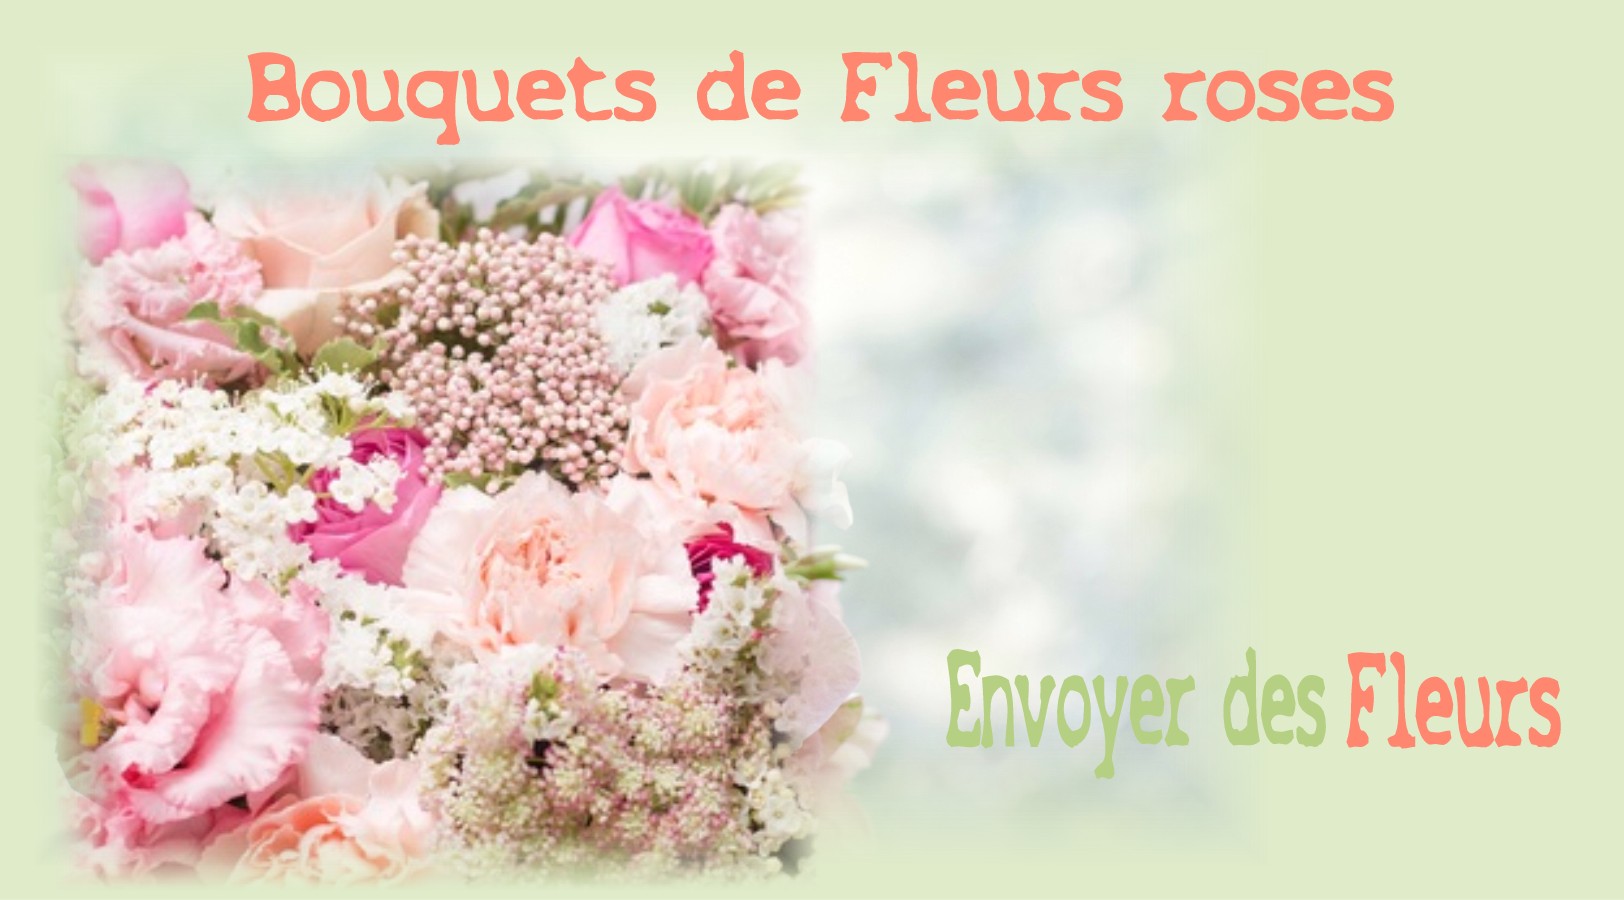 BOUQUETS DE FLEURS ROSES - FLEURISTE de l'AISNE - ENVOYER DES FLEURS